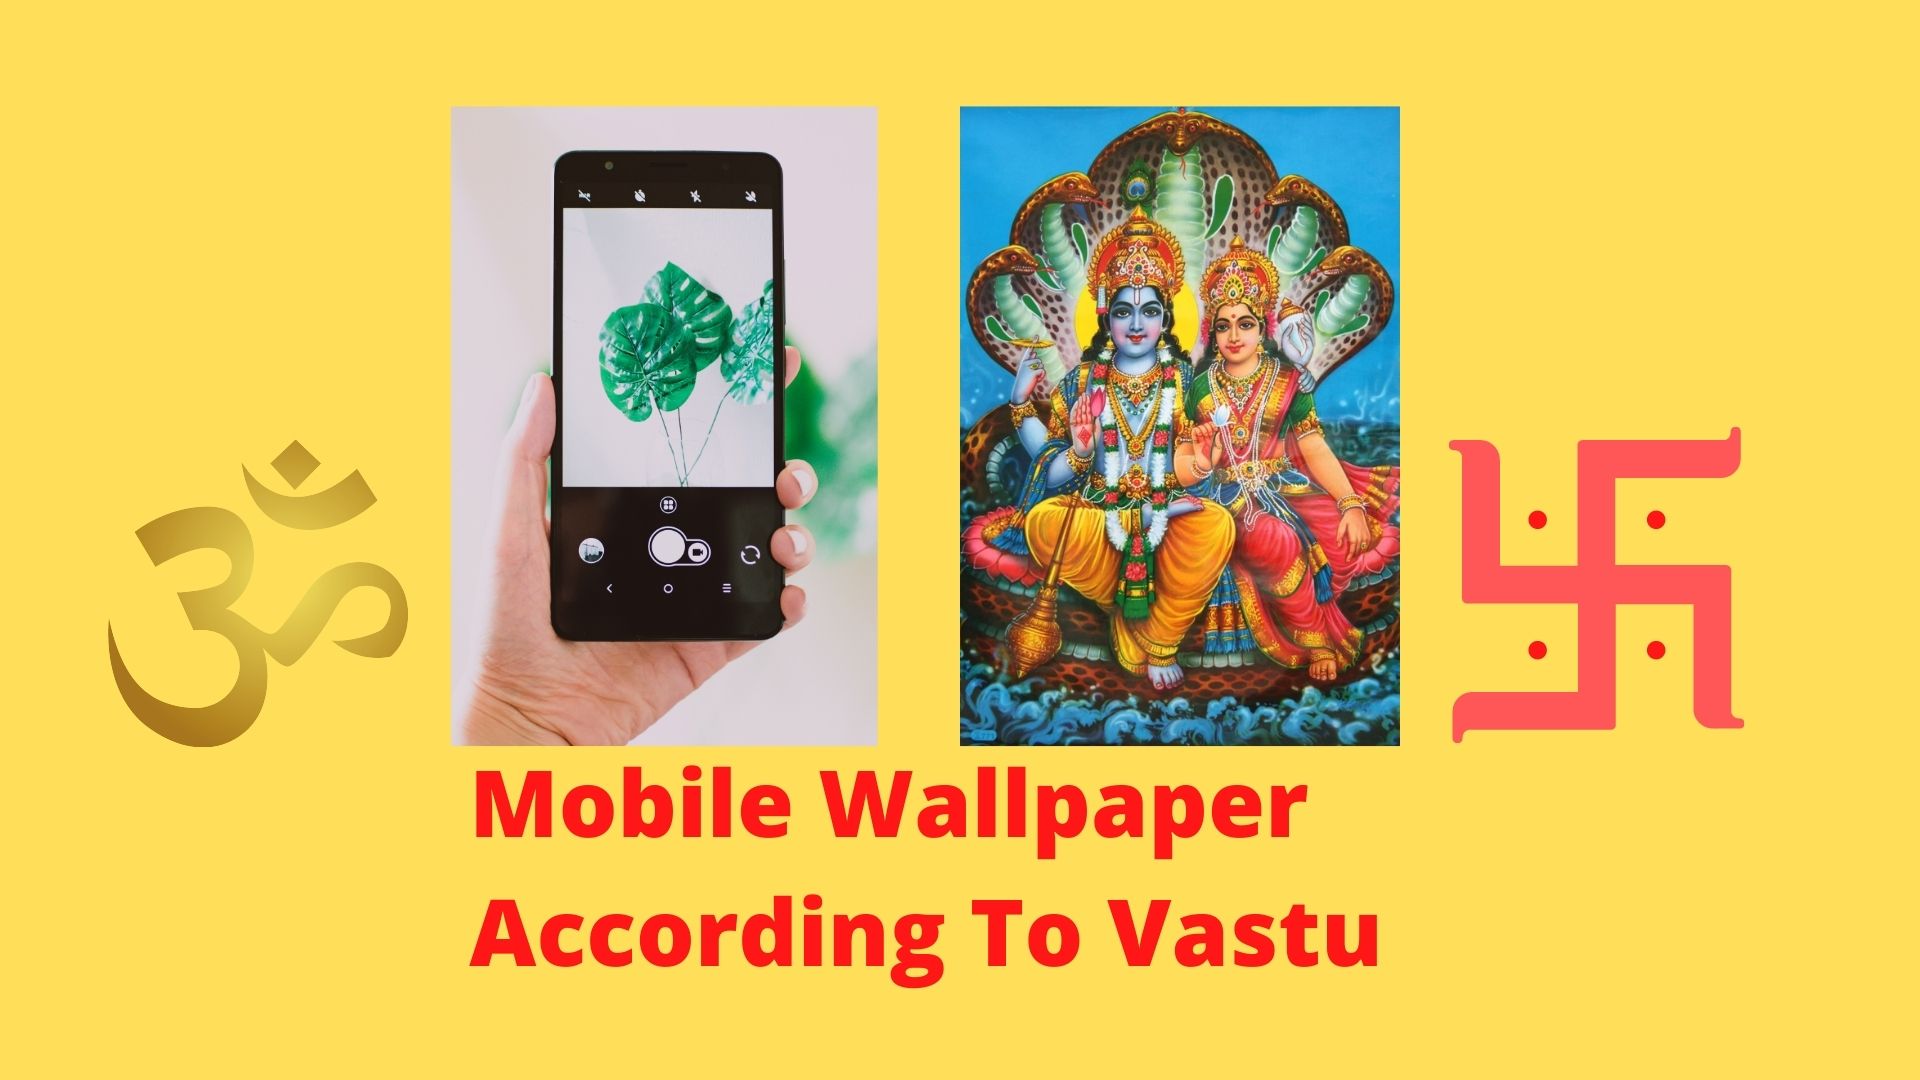 Vastu Mobile Wallpaper: Lucky Mobile